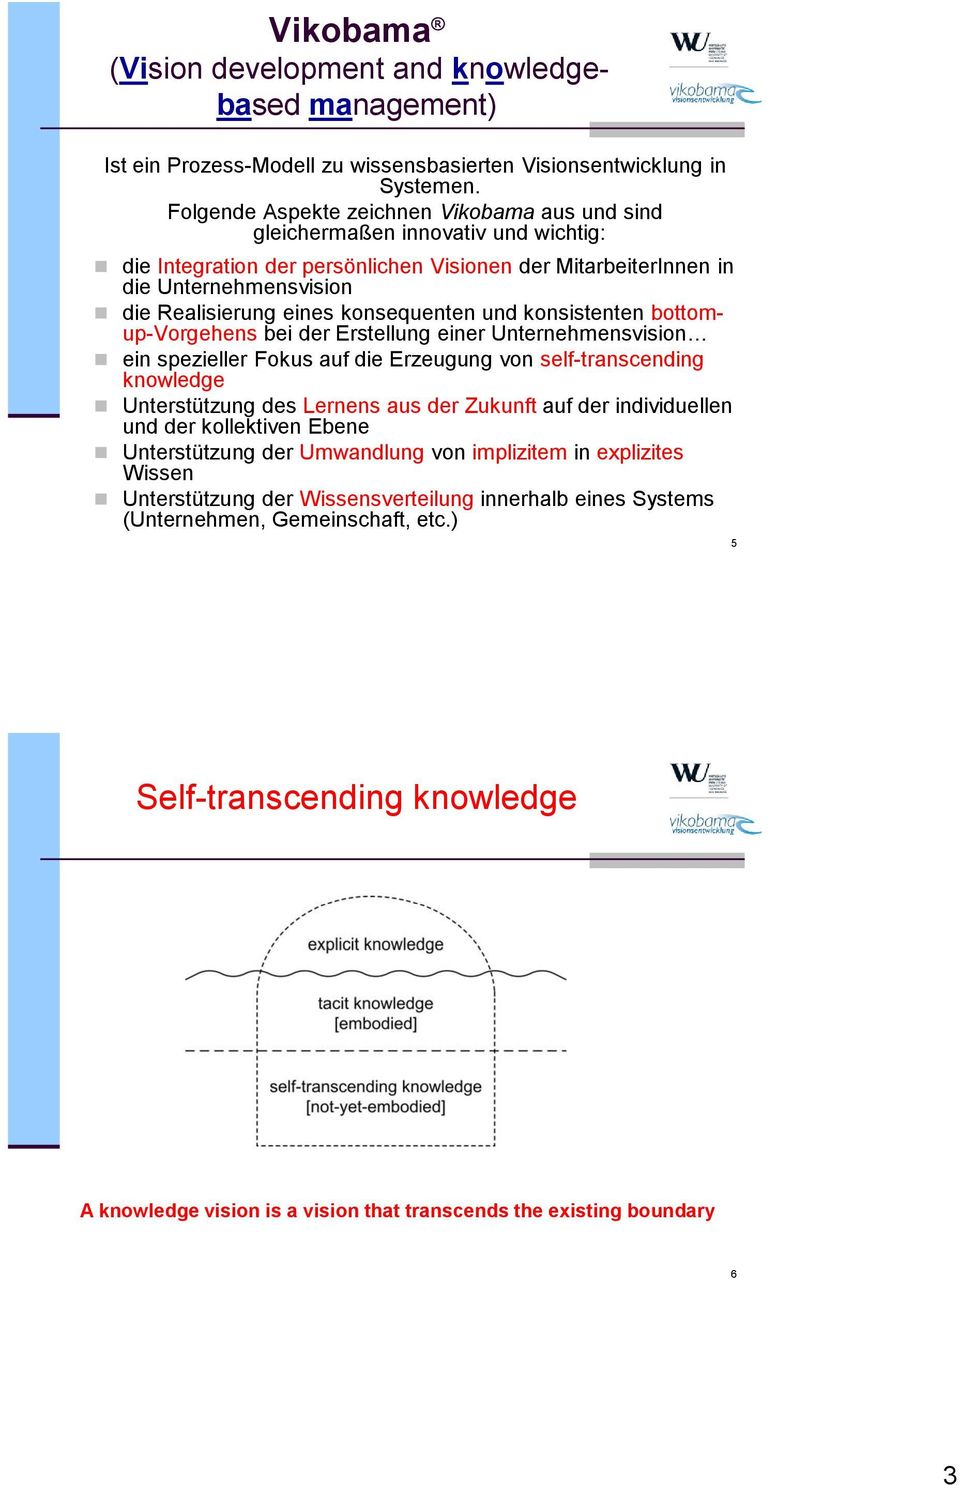 konsequenten und konsistenten bottomup-vorgehens bei der Erstellung einer Unternehmensvision ein spezieller Fokus auf die Erzeugung von self-transcending knowledge Unterstützung des Lernens aus der